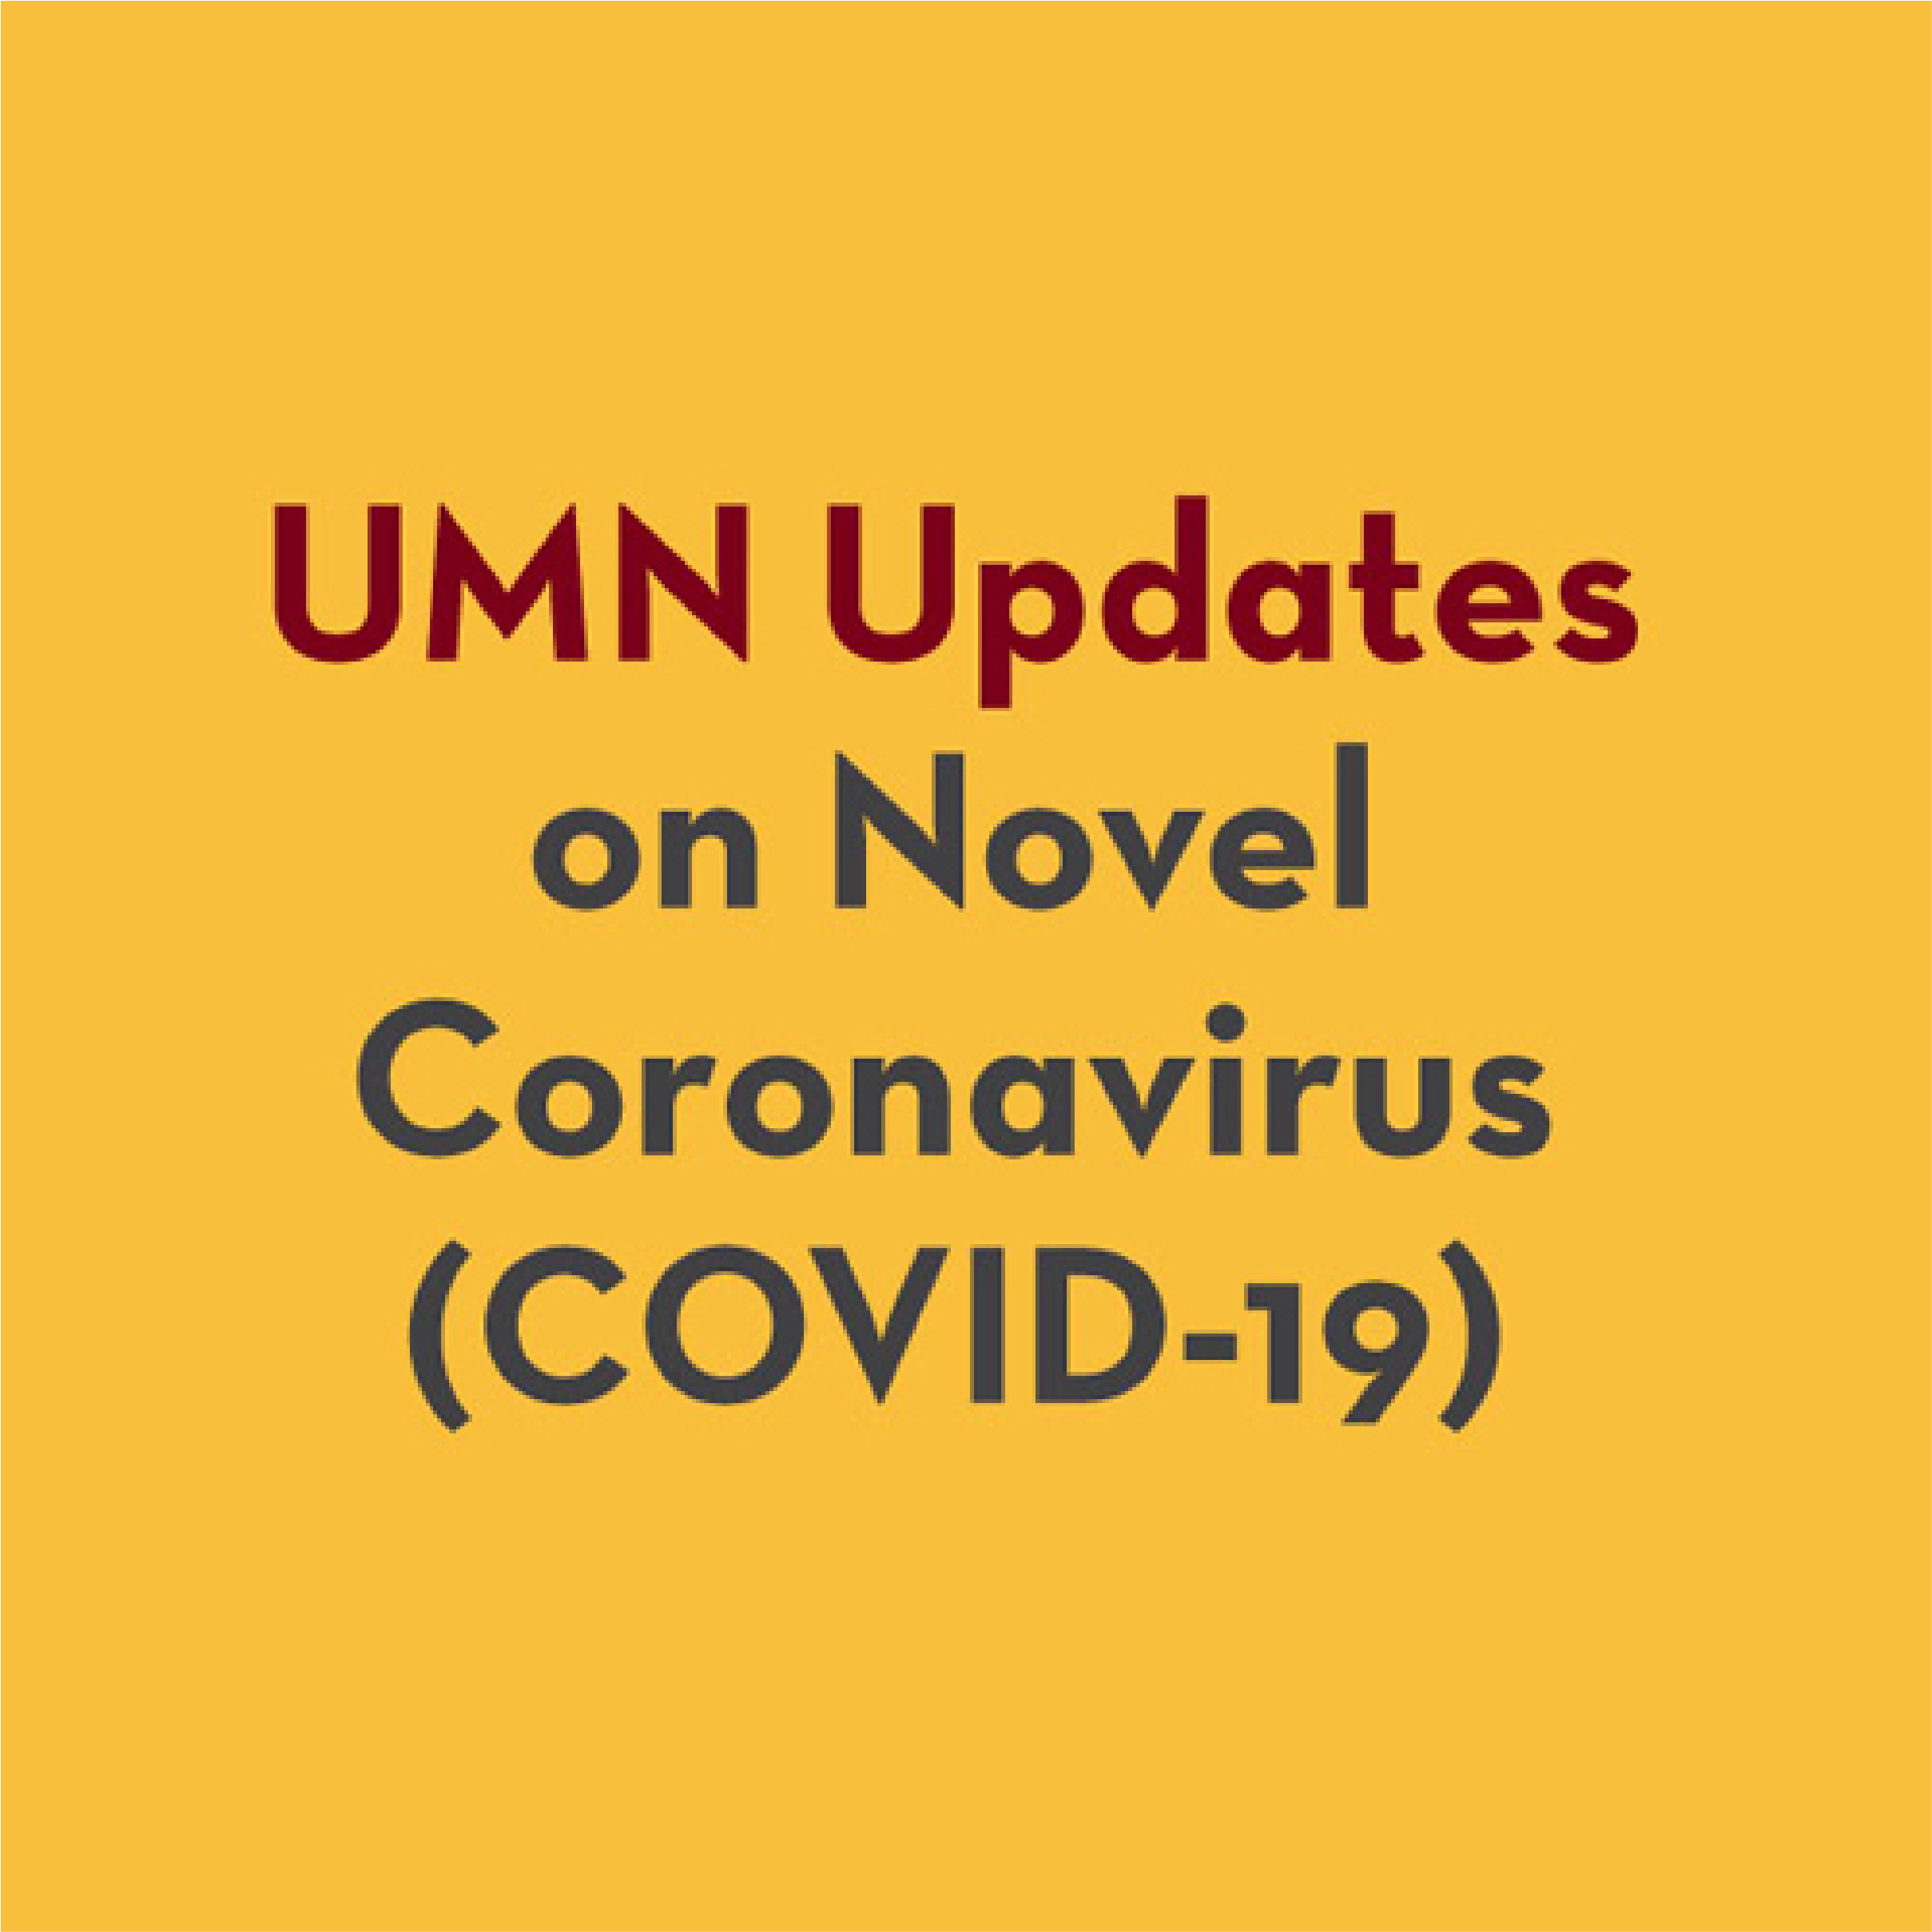 umn updates on novel coronavirus